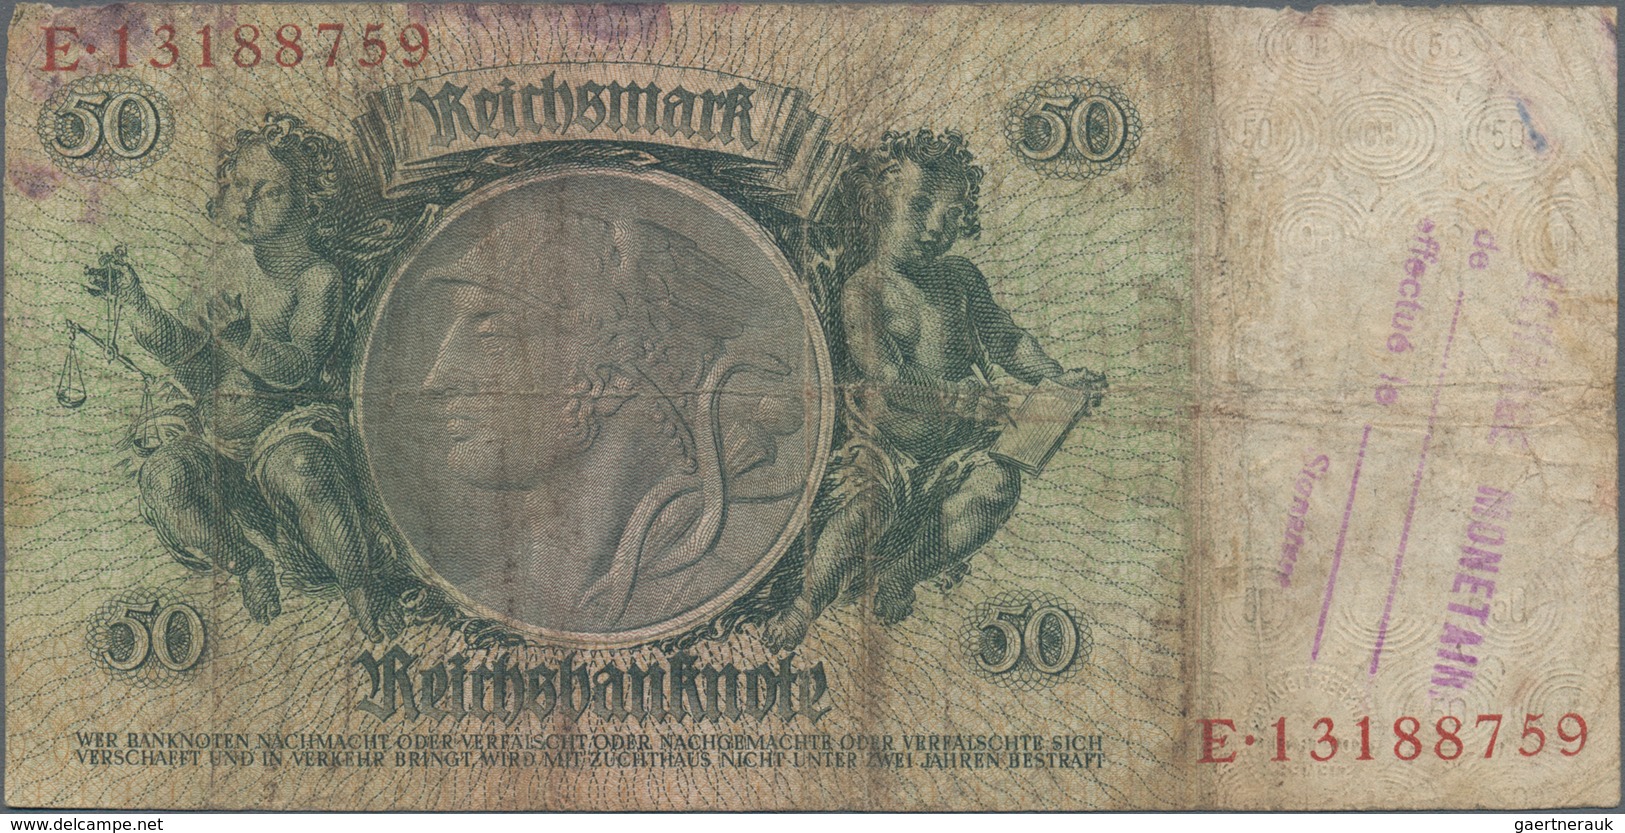 Deutschland - Deutsches Reich bis 1945: Großes Lot mit 15 belgischen Abstempelungen auf 50 Reichsmar